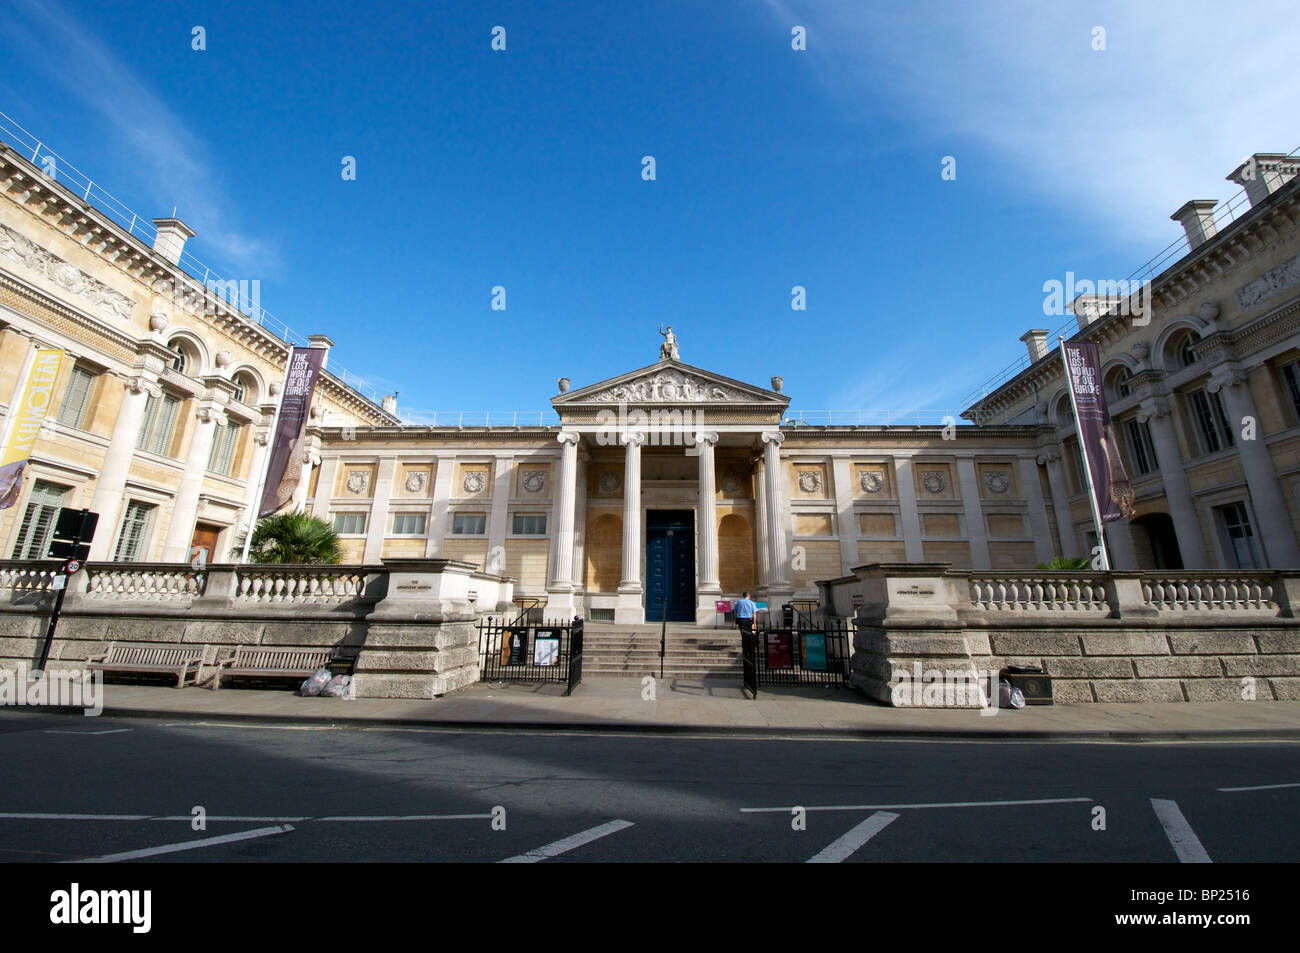 Oxford, Angleterre - l'Ashmolean Museum dans le centre d'Oxford Banque D'Images